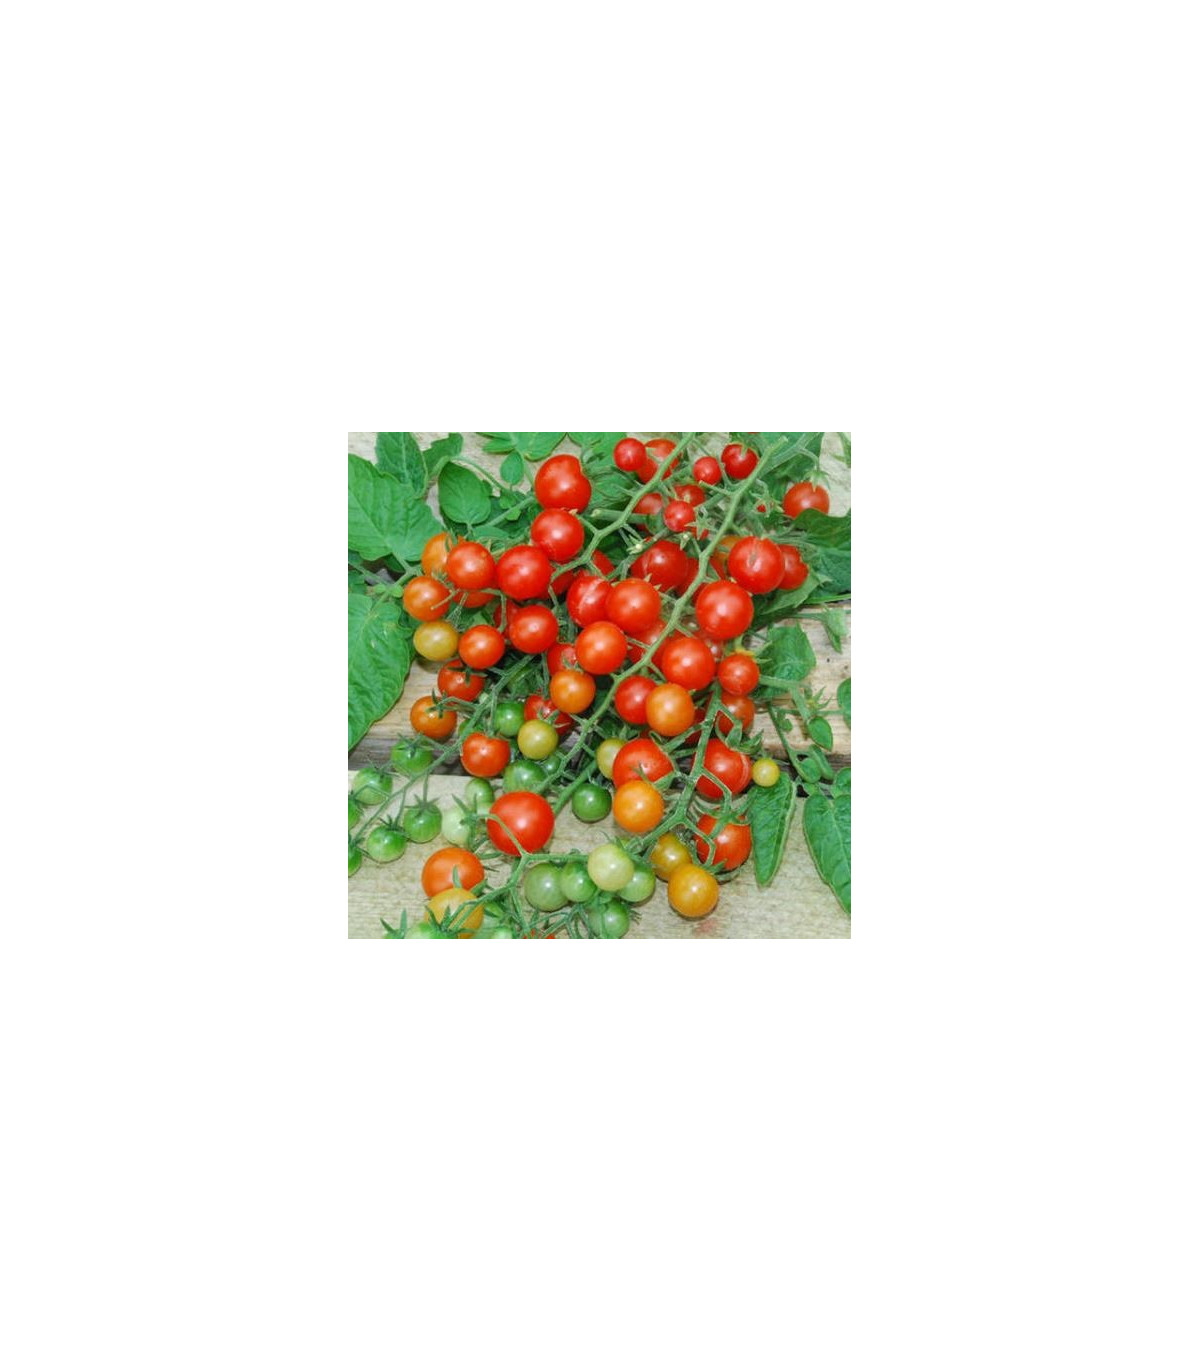 Divoké paradajky - Solnum pimpinellifolium - semená paradajky - 6 ks